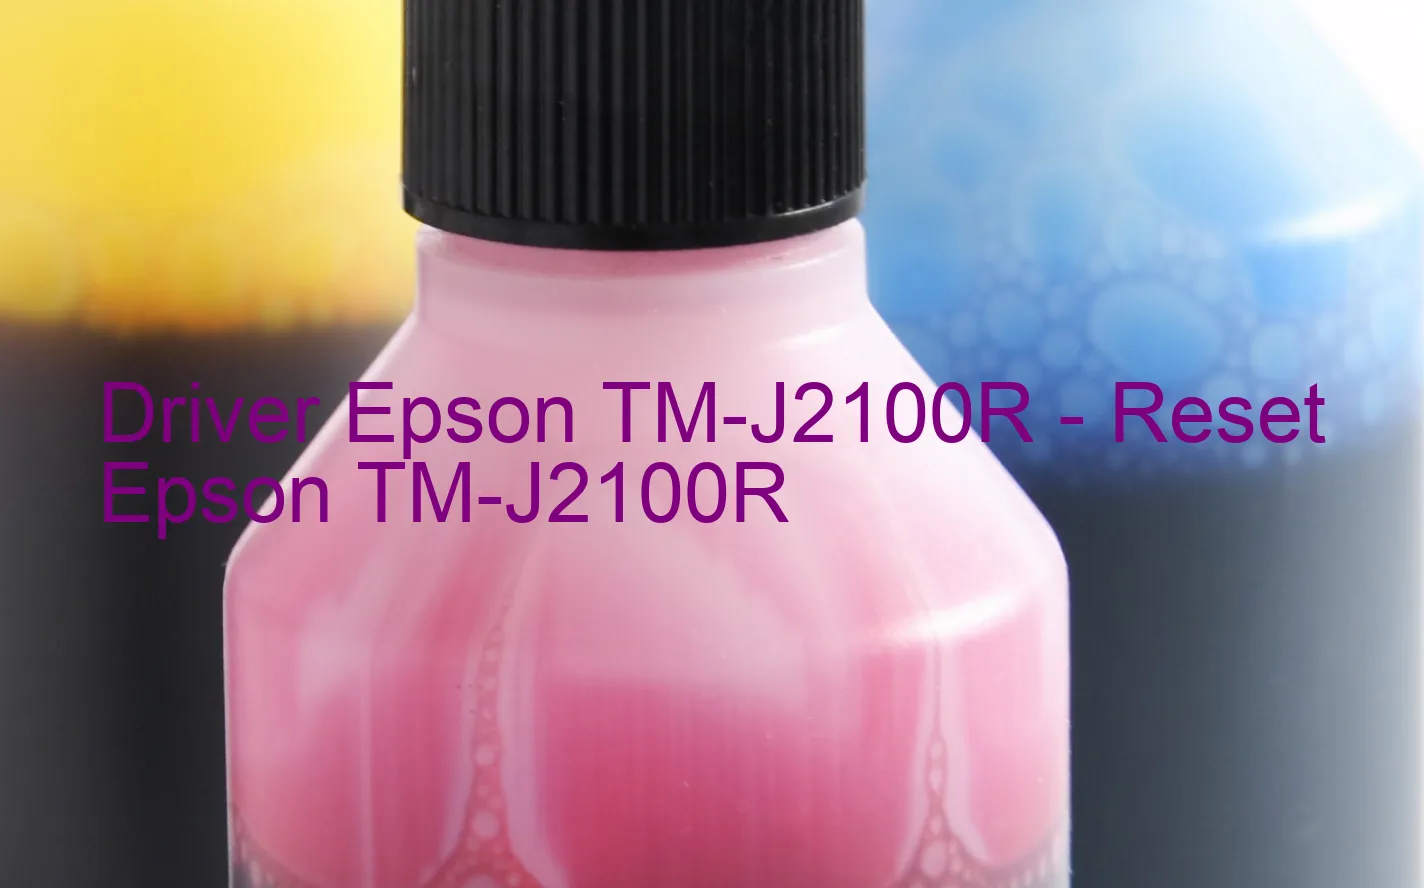 Epson TM-J2100Rのドライバー、Epson TM-J2100Rのリセットソフトウェア